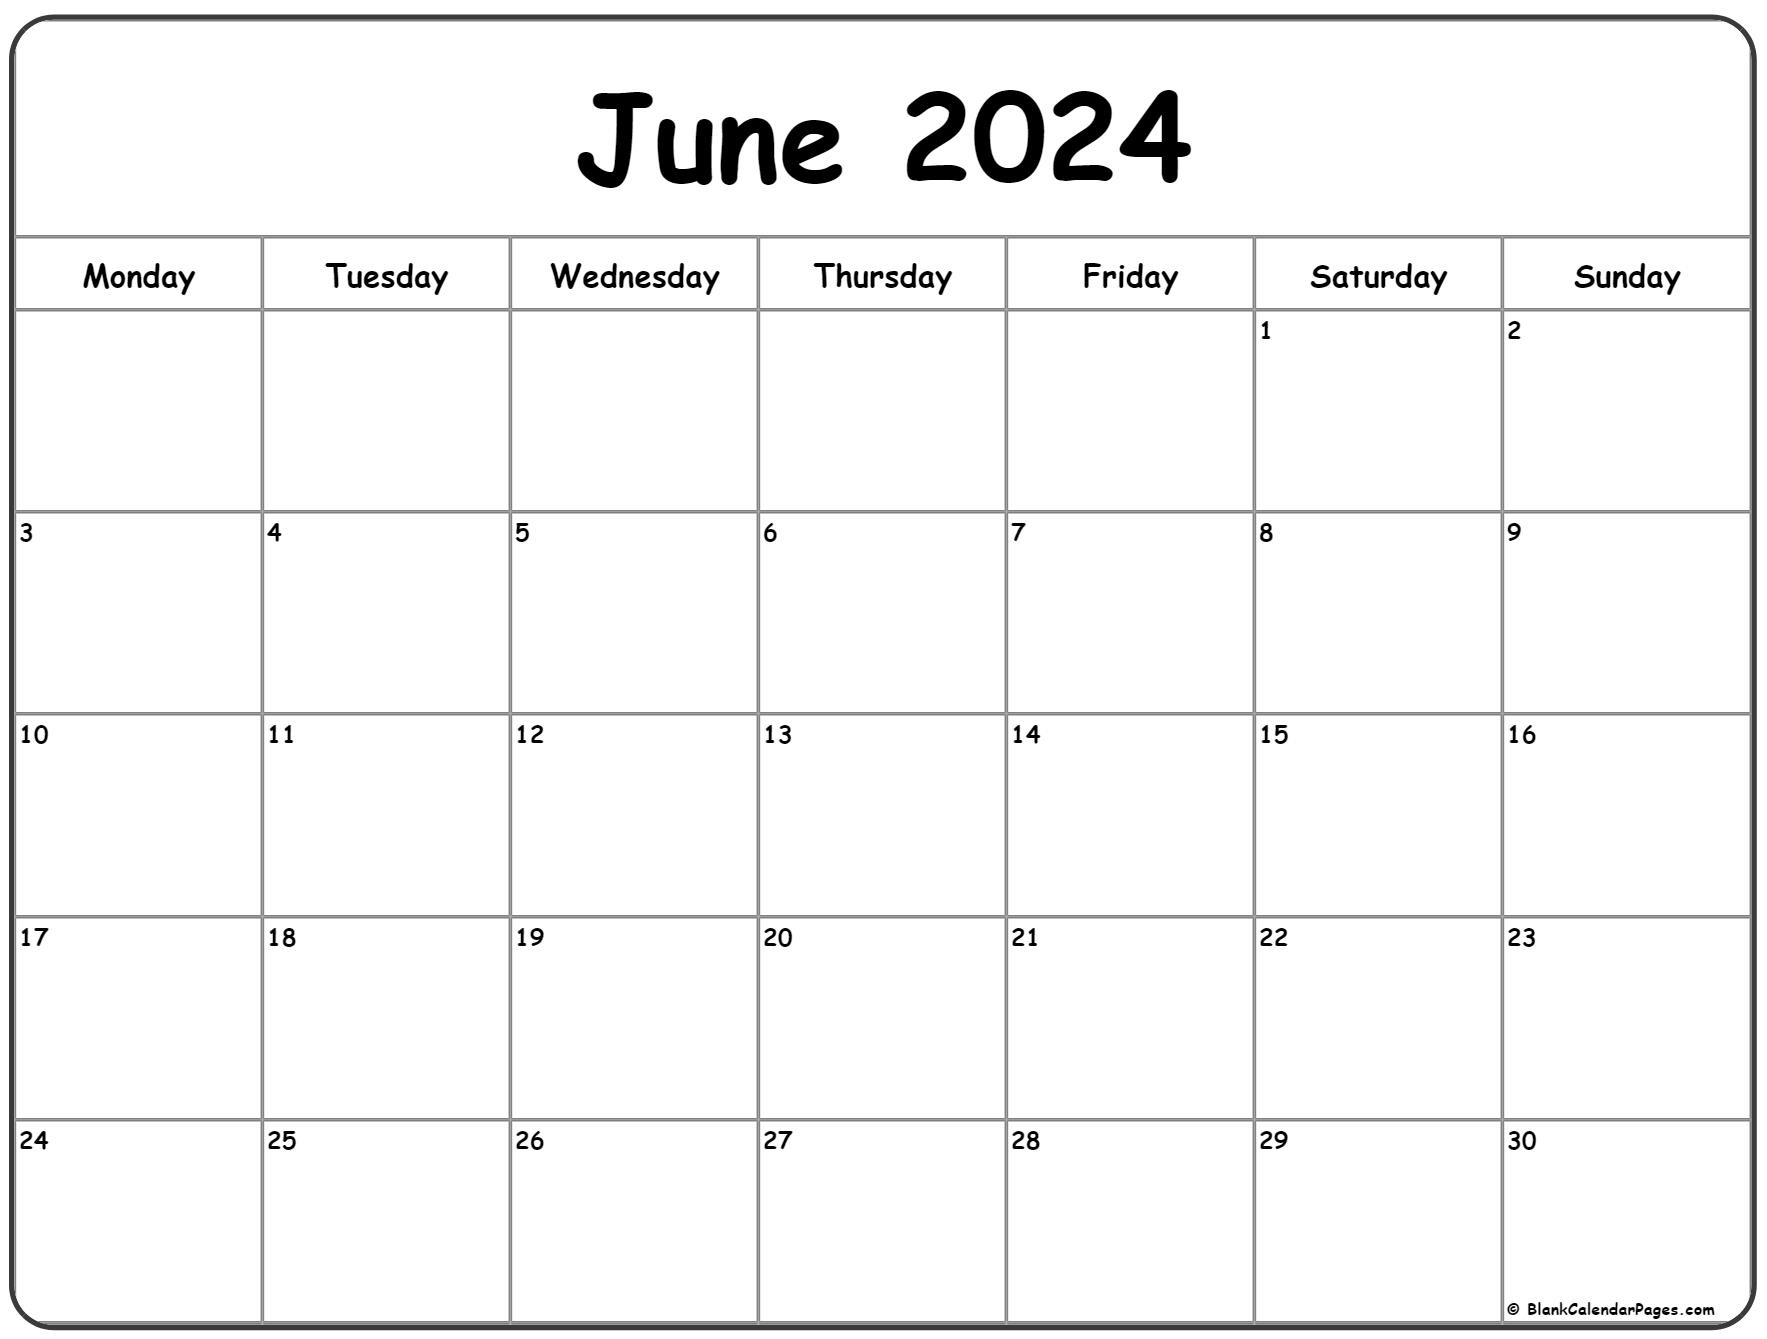 June 2024 Monday Calendar | Monday To Sunday within Calendar Jun 2024